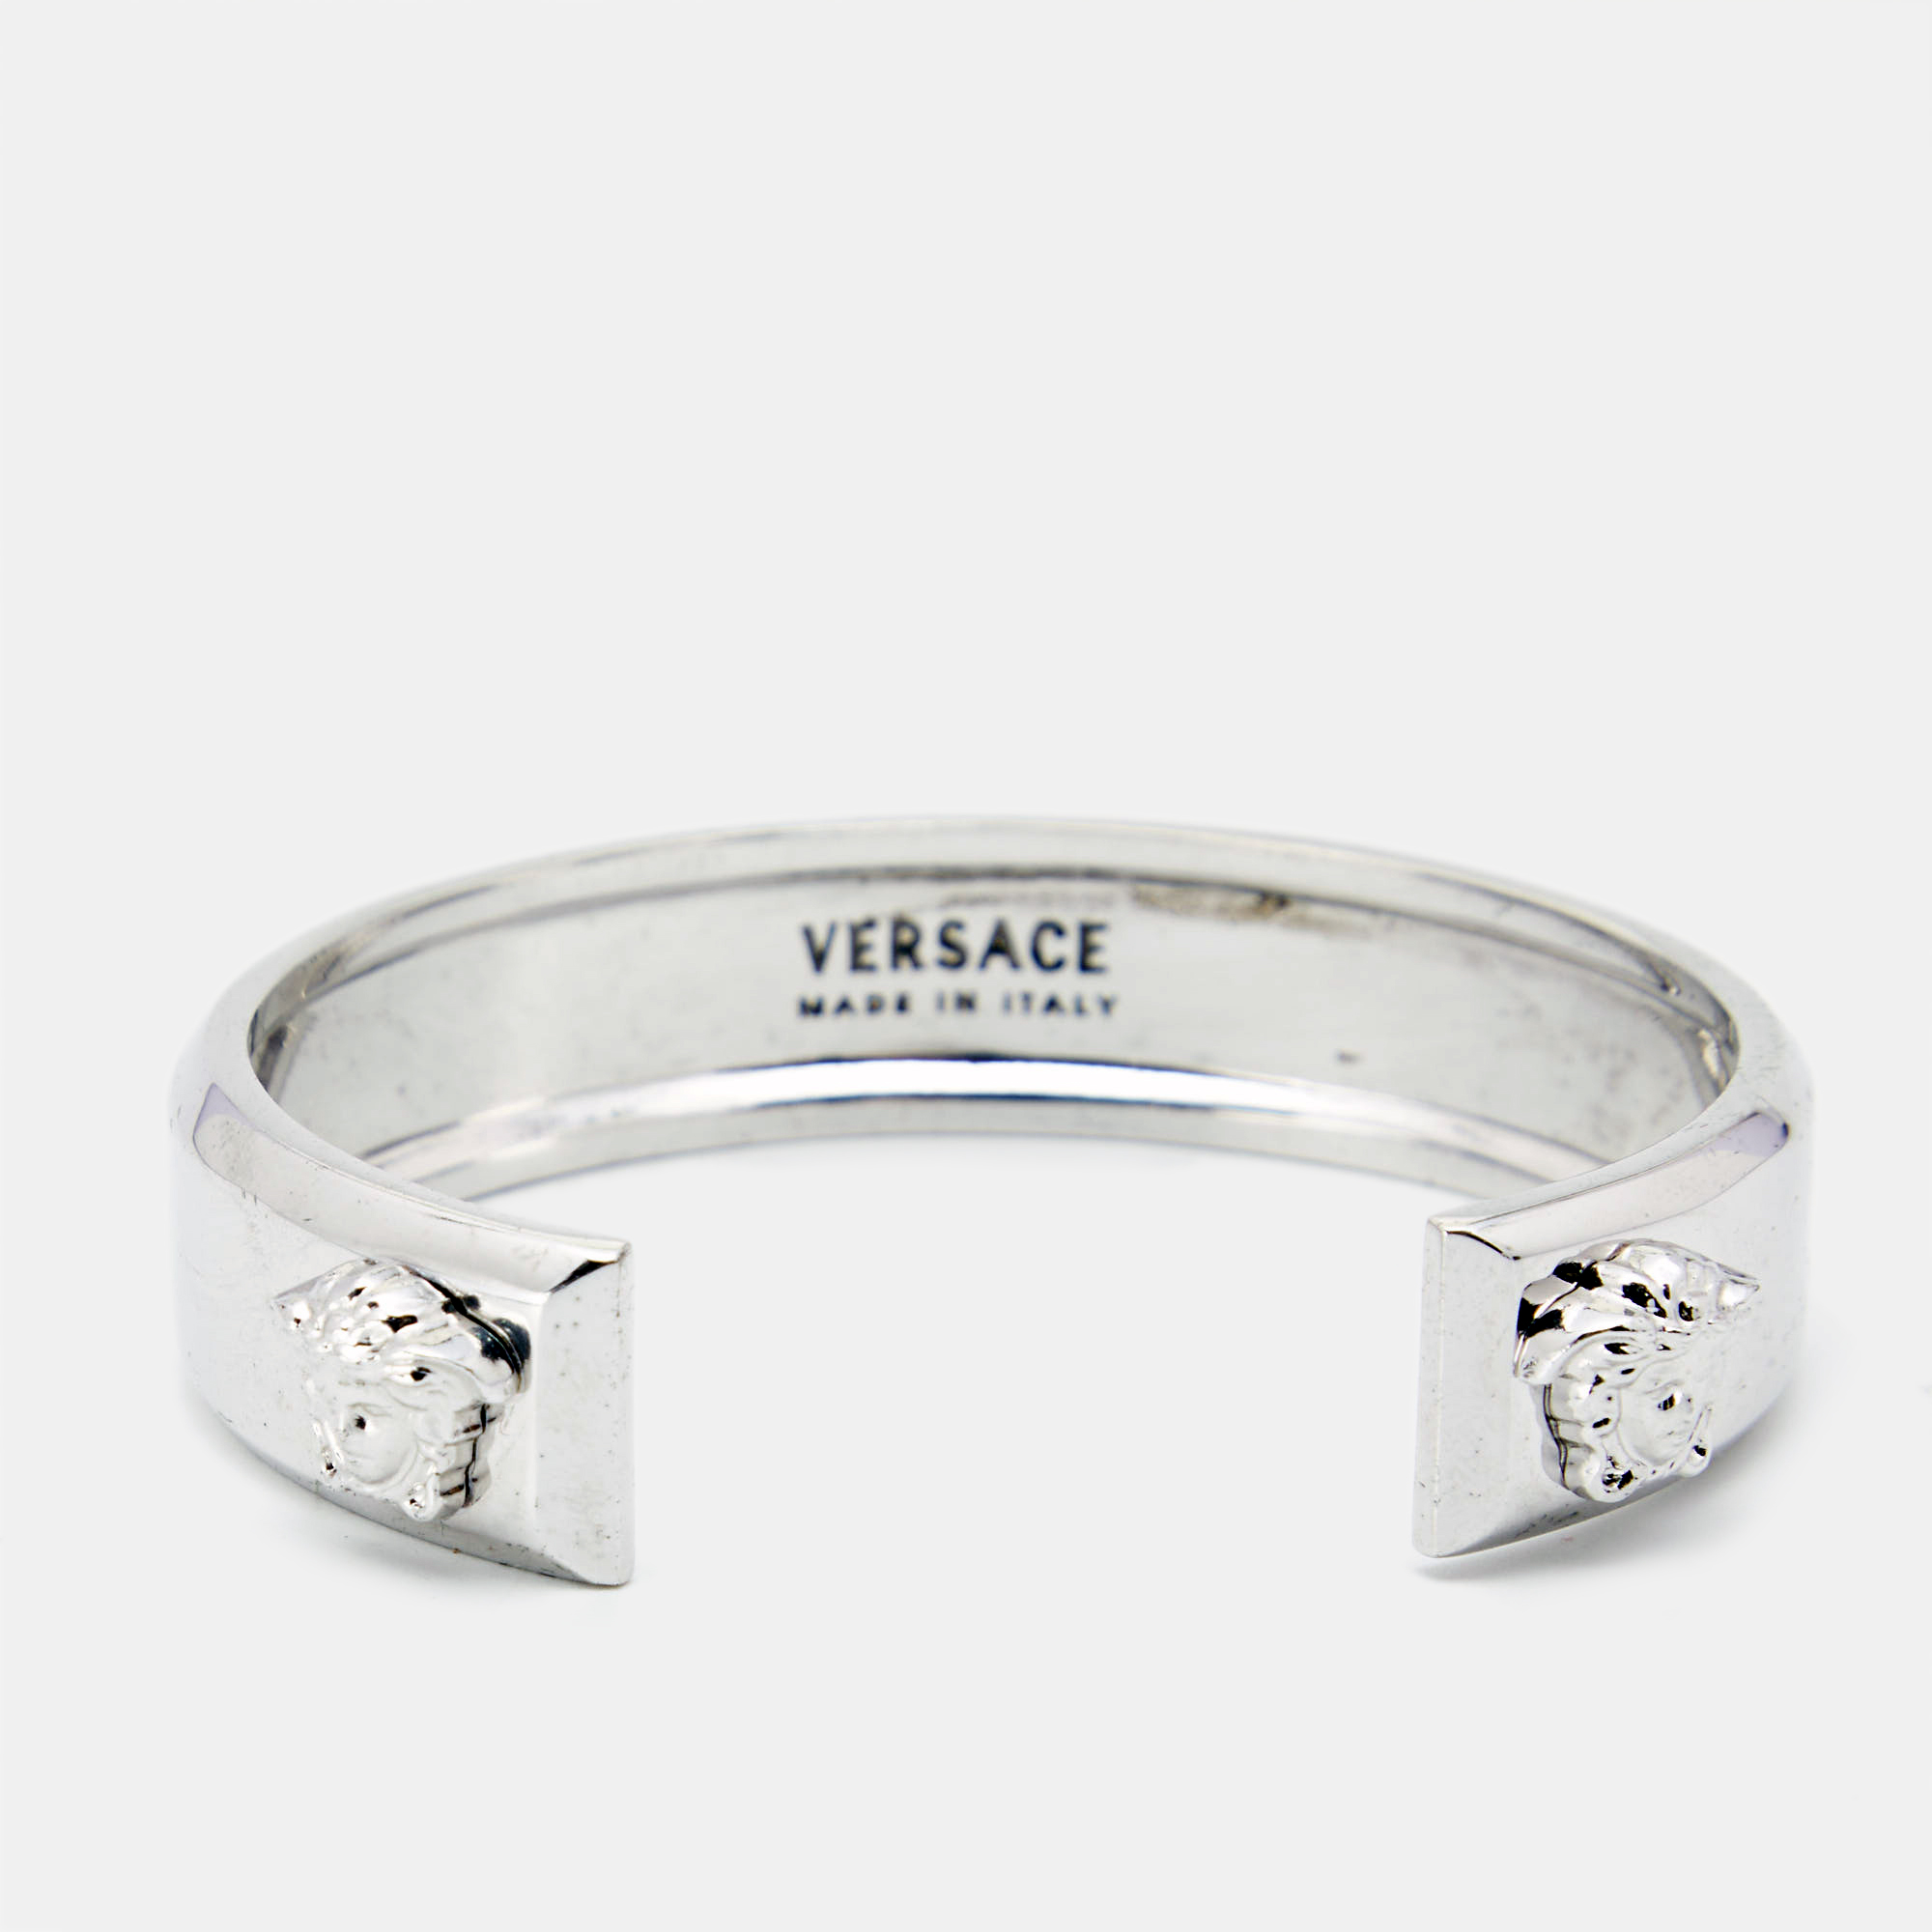 Versace Medusa Silver Tone Cuff Bracelet